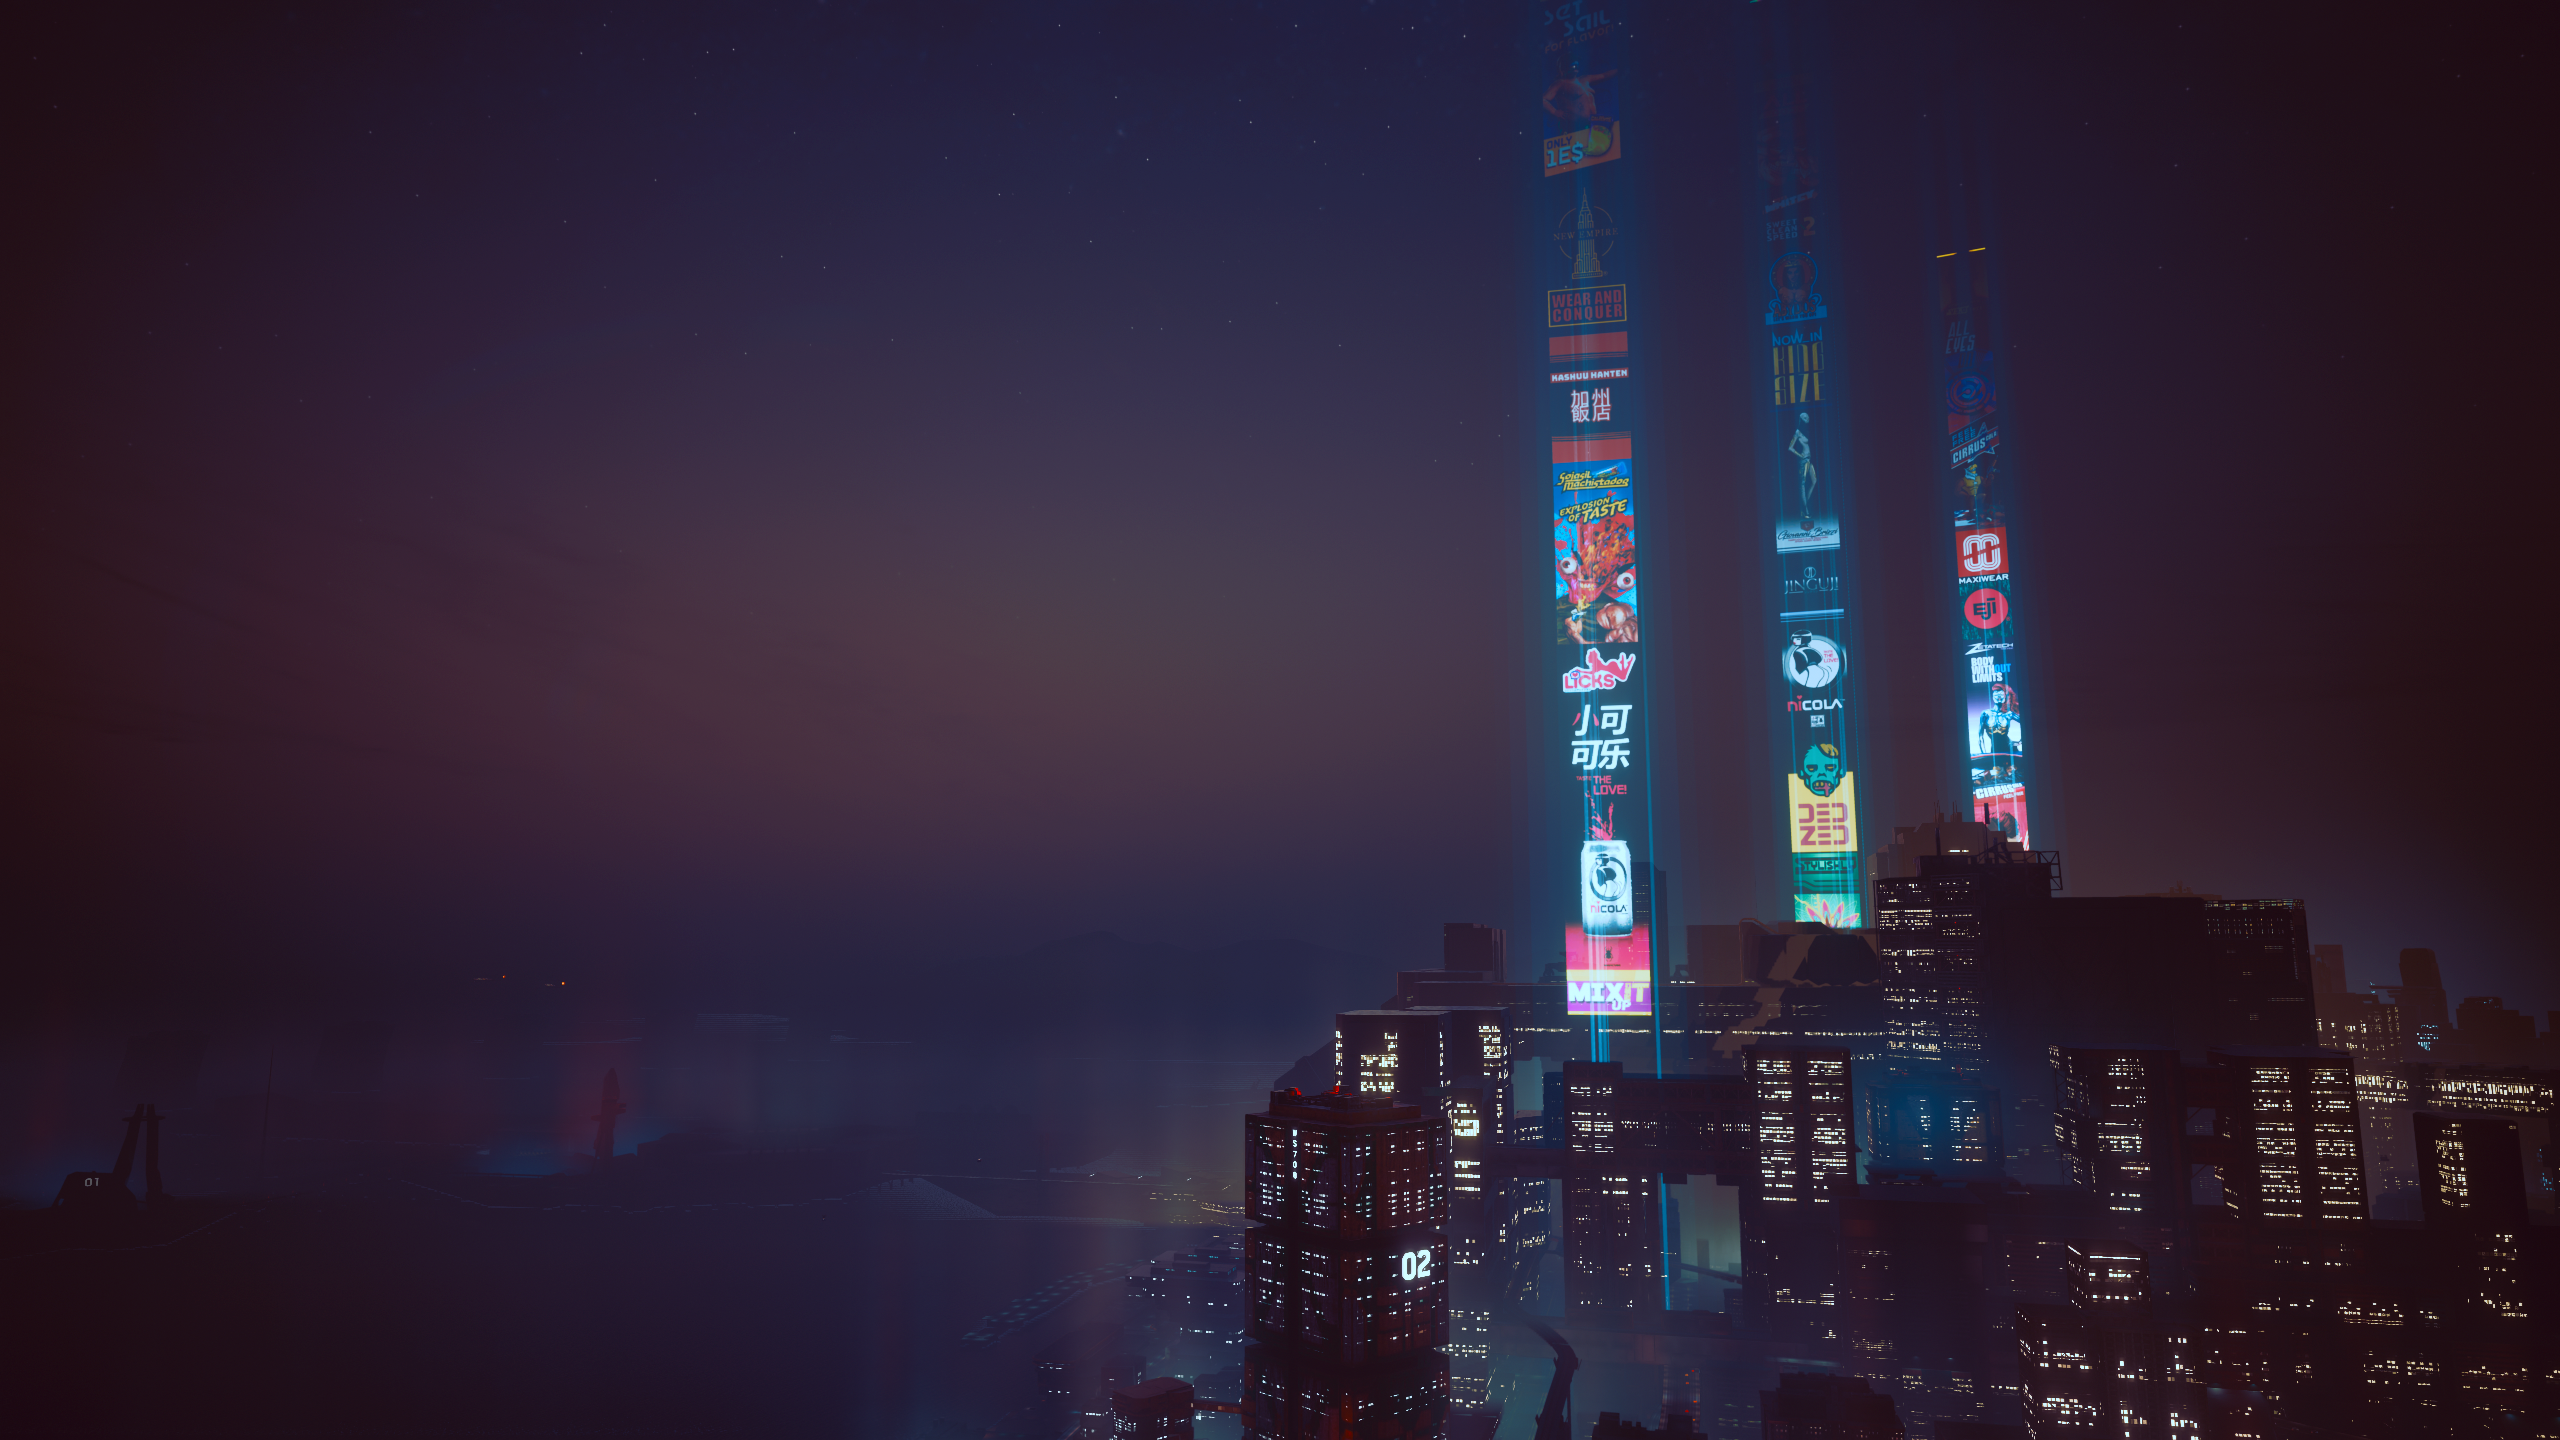 Cyberpunk 2077 City Lights Digital Art Video Games Low Light 2560x1440